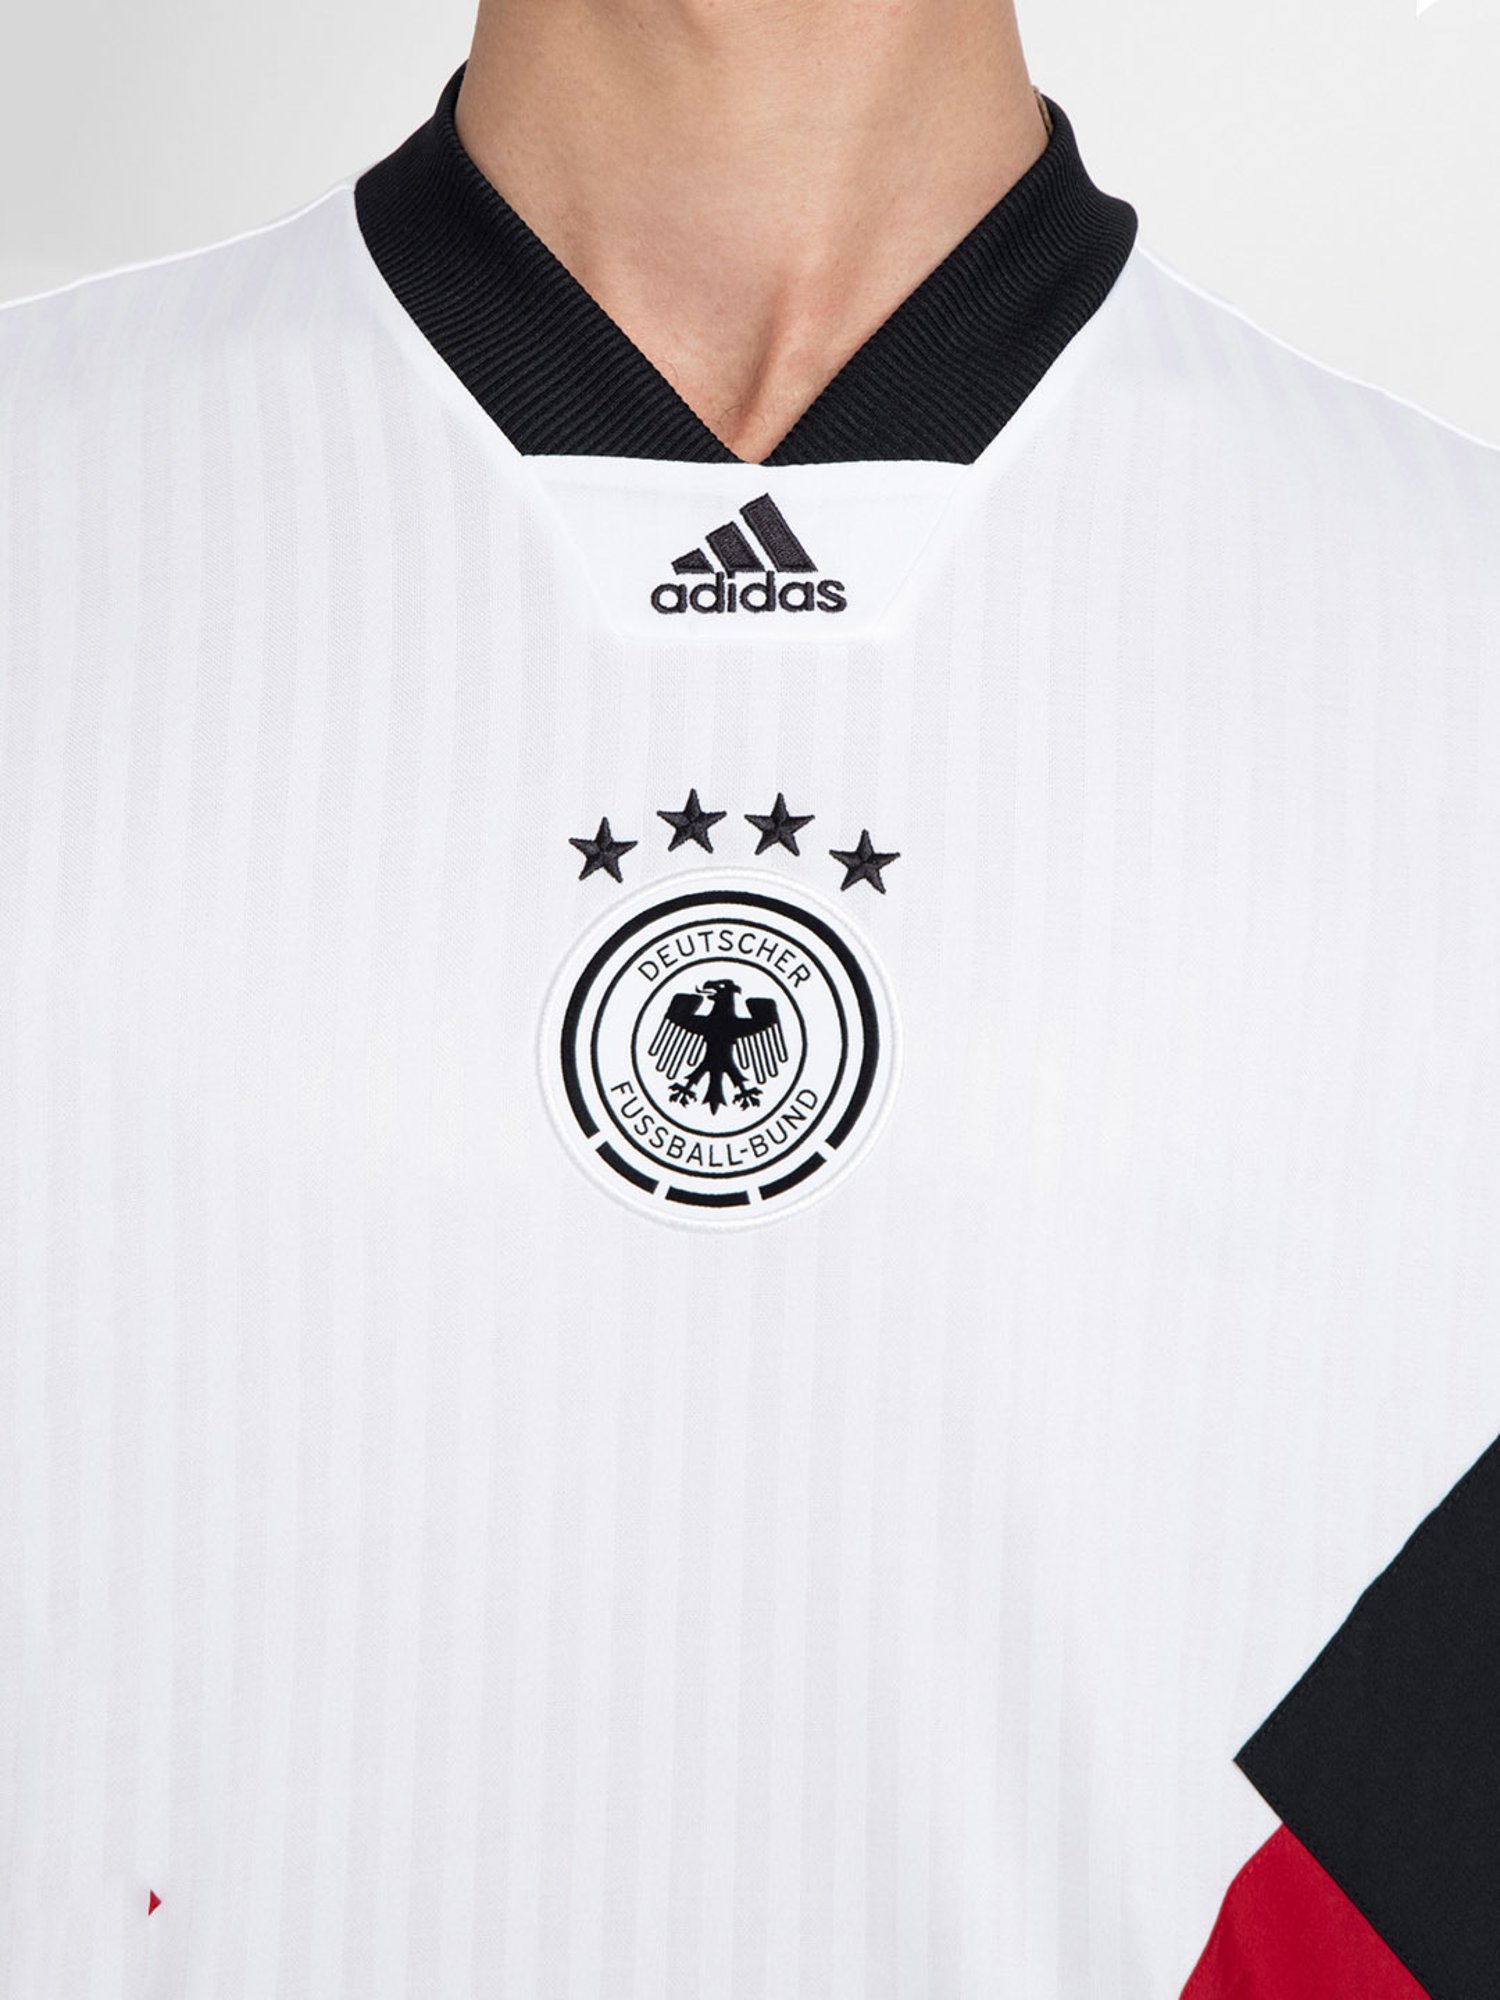 adidas DFB Deutschland Icon Jersey - Black